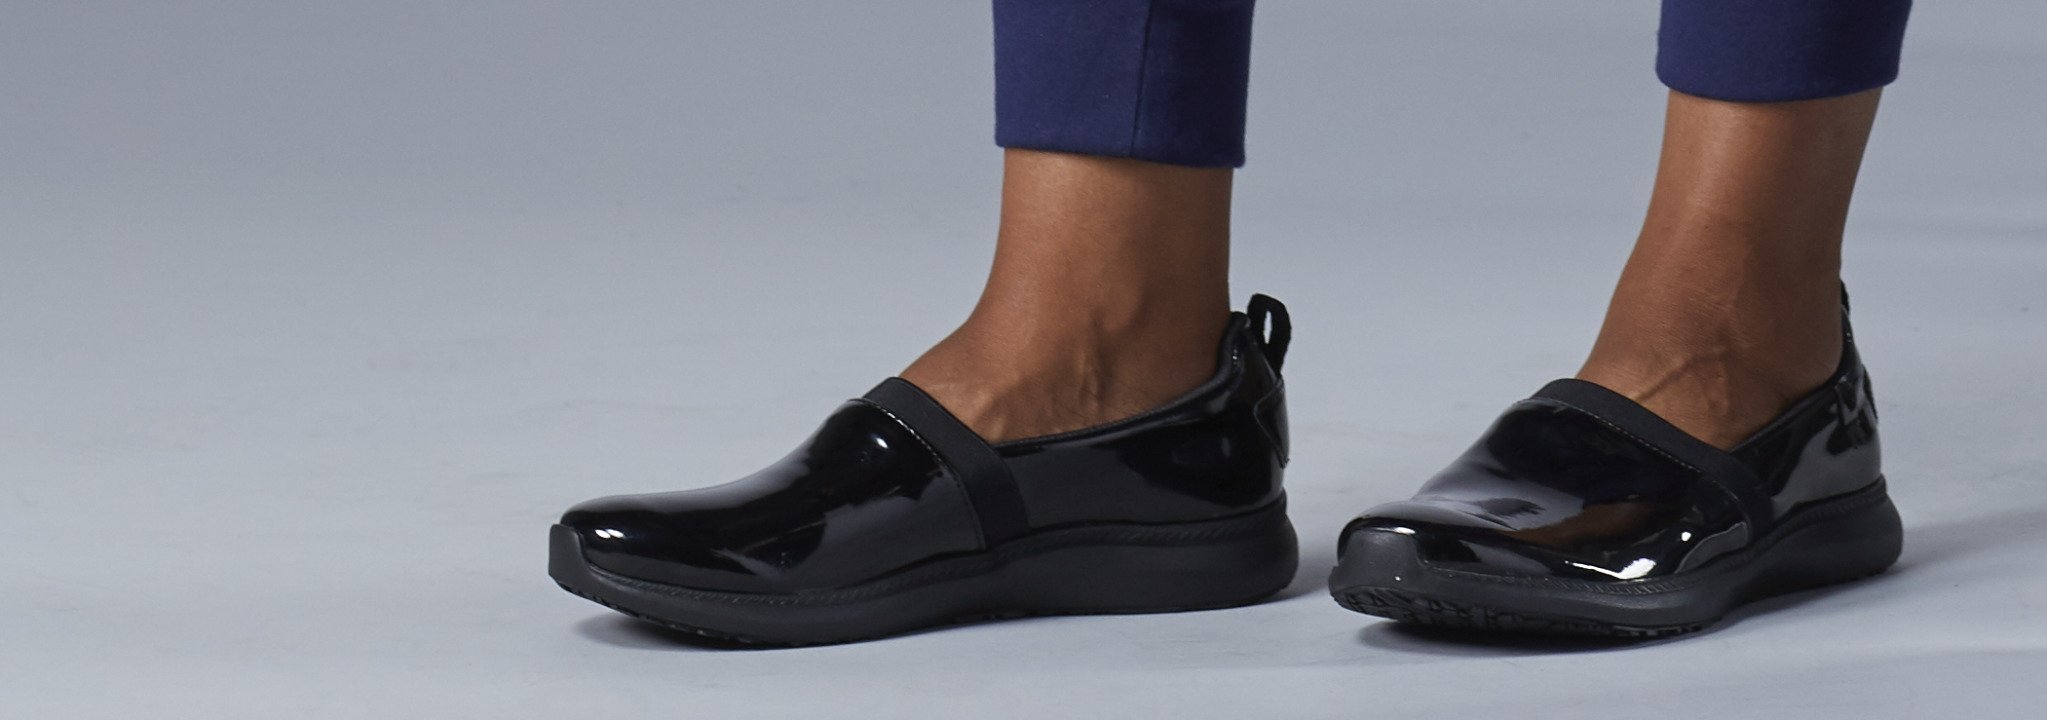 vionic slip resistant shoes